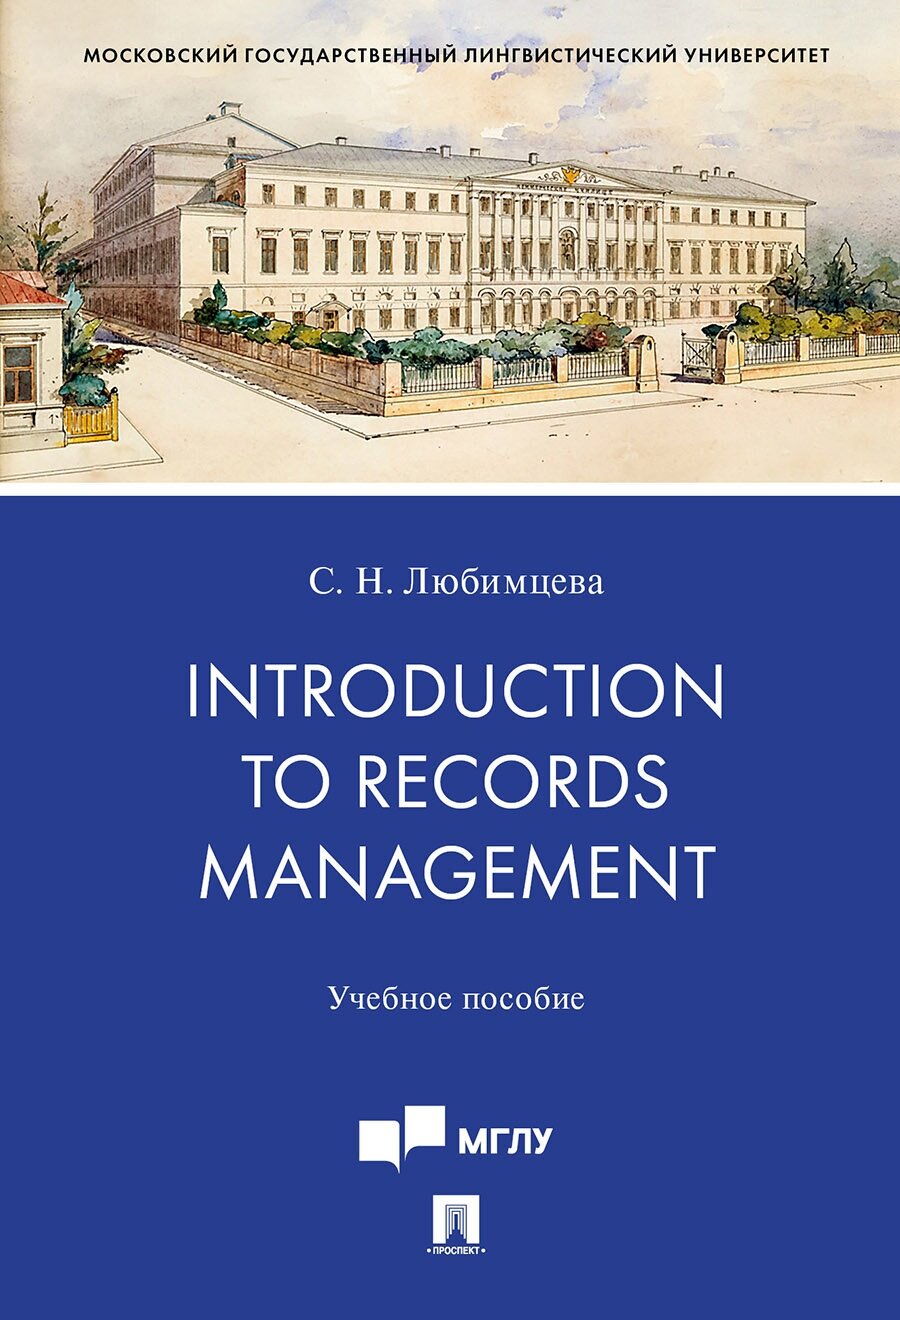 Любимцева С. Н. "Introduction to Records Management. Учебное пособие"